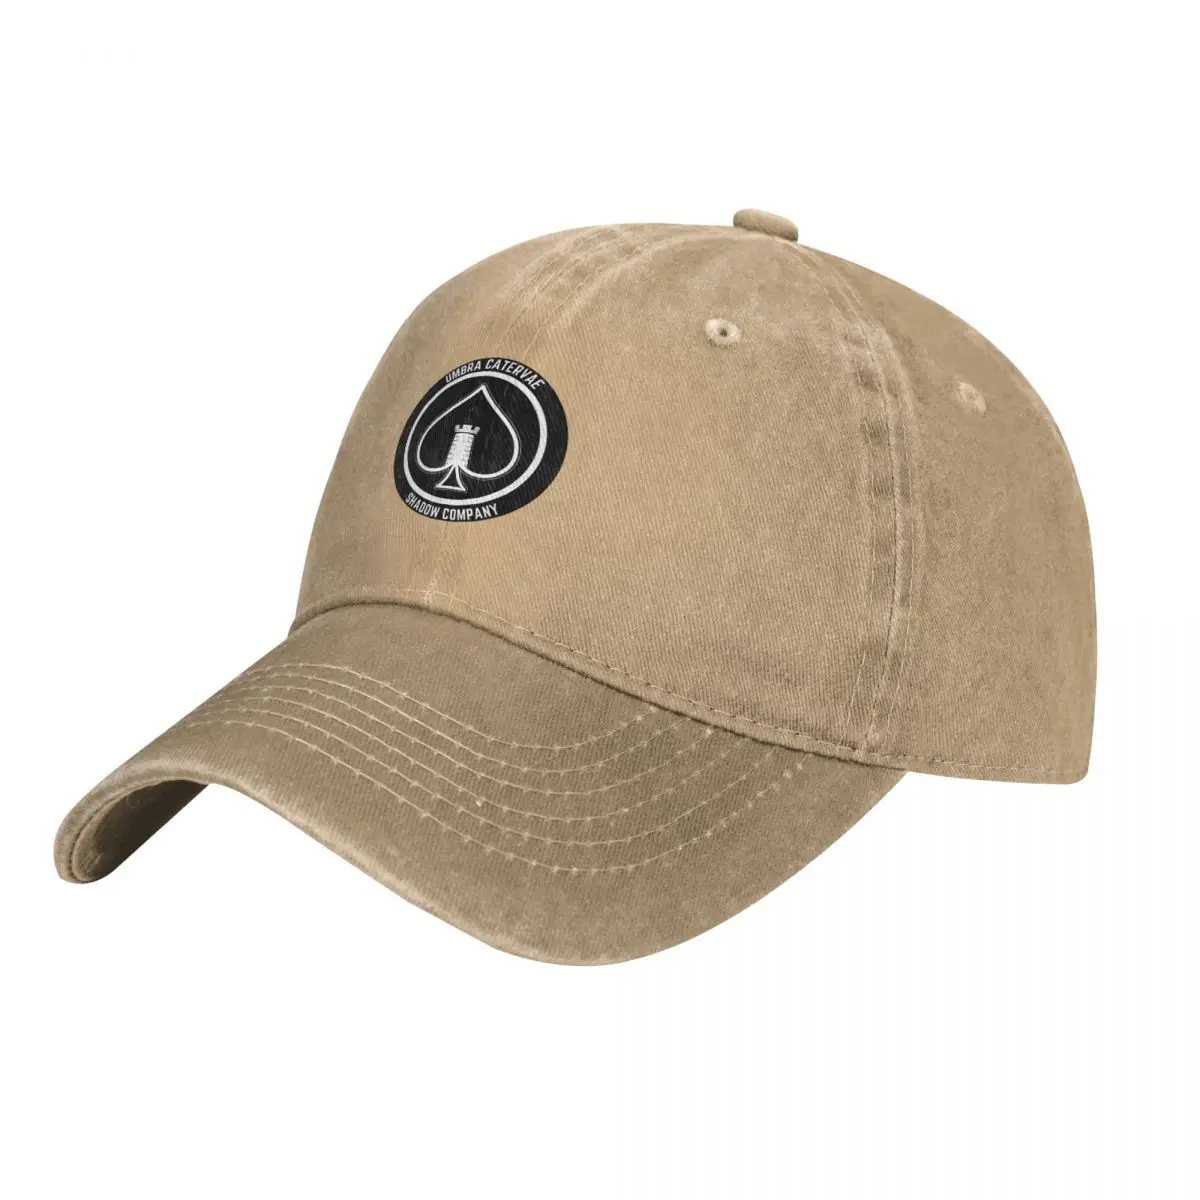 Shadow Company Emblem Cap Cowboy Hat bucket hat Sun cap military tactica... - $21.82